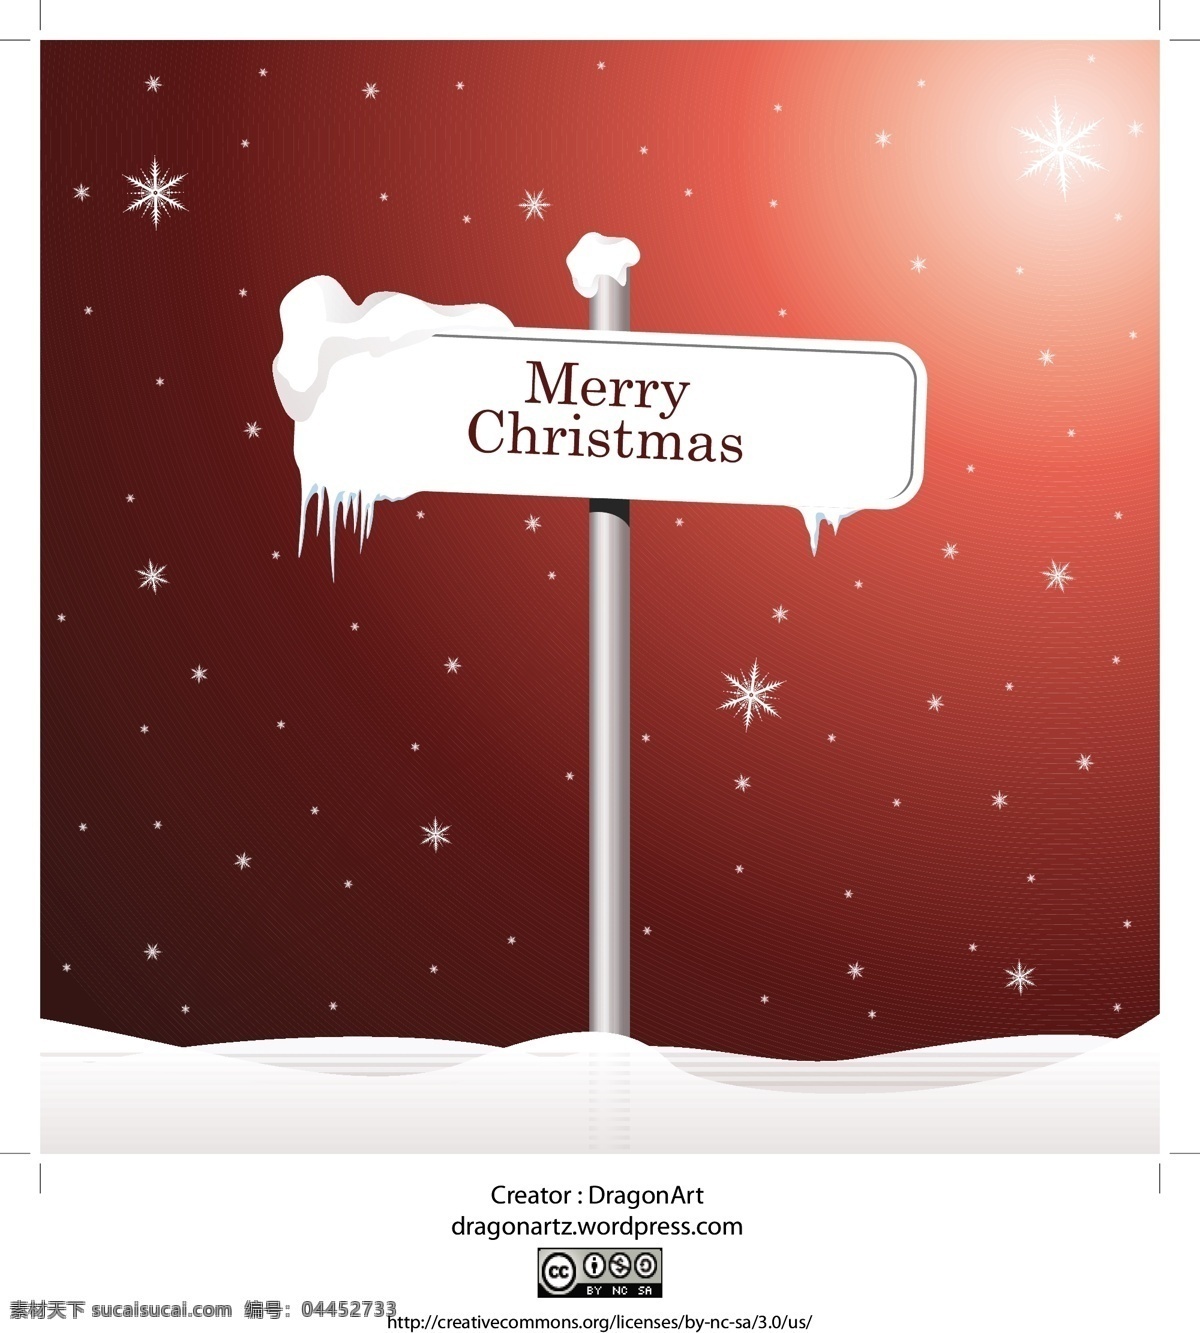 公告牌 矢量 箭头 圣诞节 圣诞素材 矢量素材 星光 雪花 指示牌 模板下载 圣诞节公告牌 小牌子 雪景 psd源文件